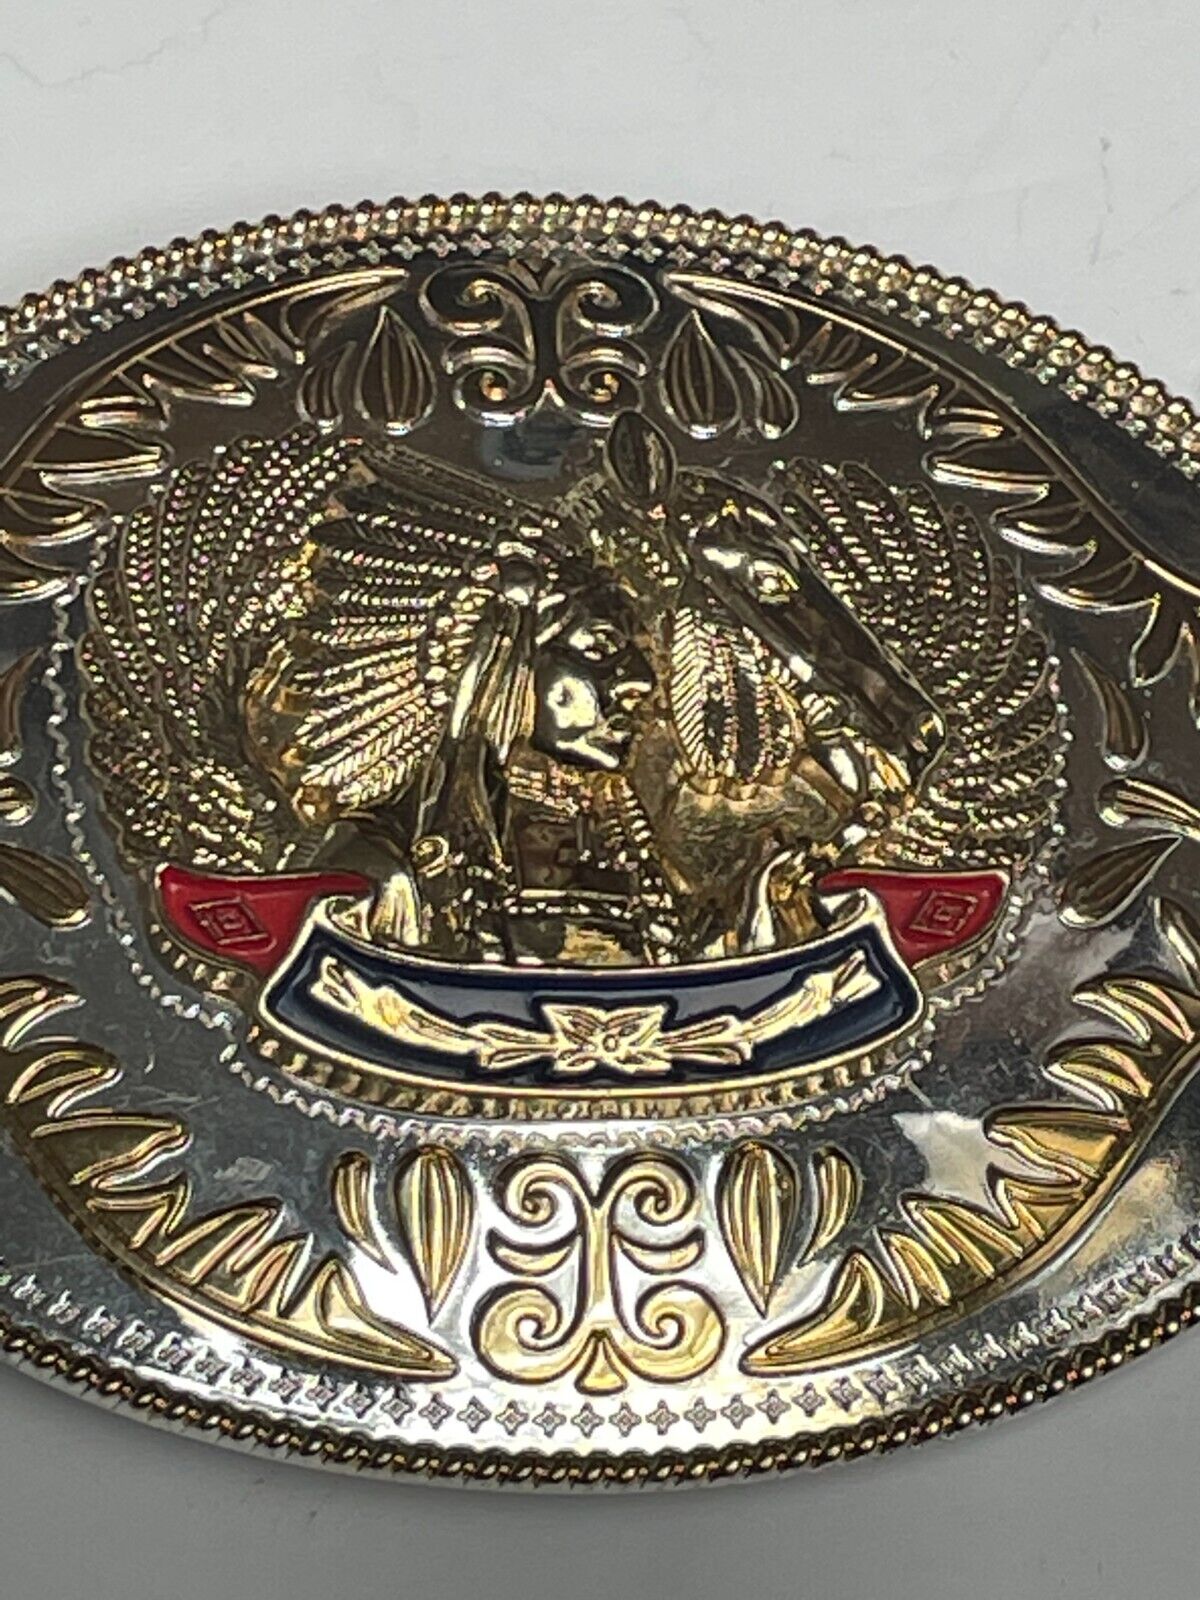 Native American Chief Horse Head Enamel Metal Large Belt Buckle